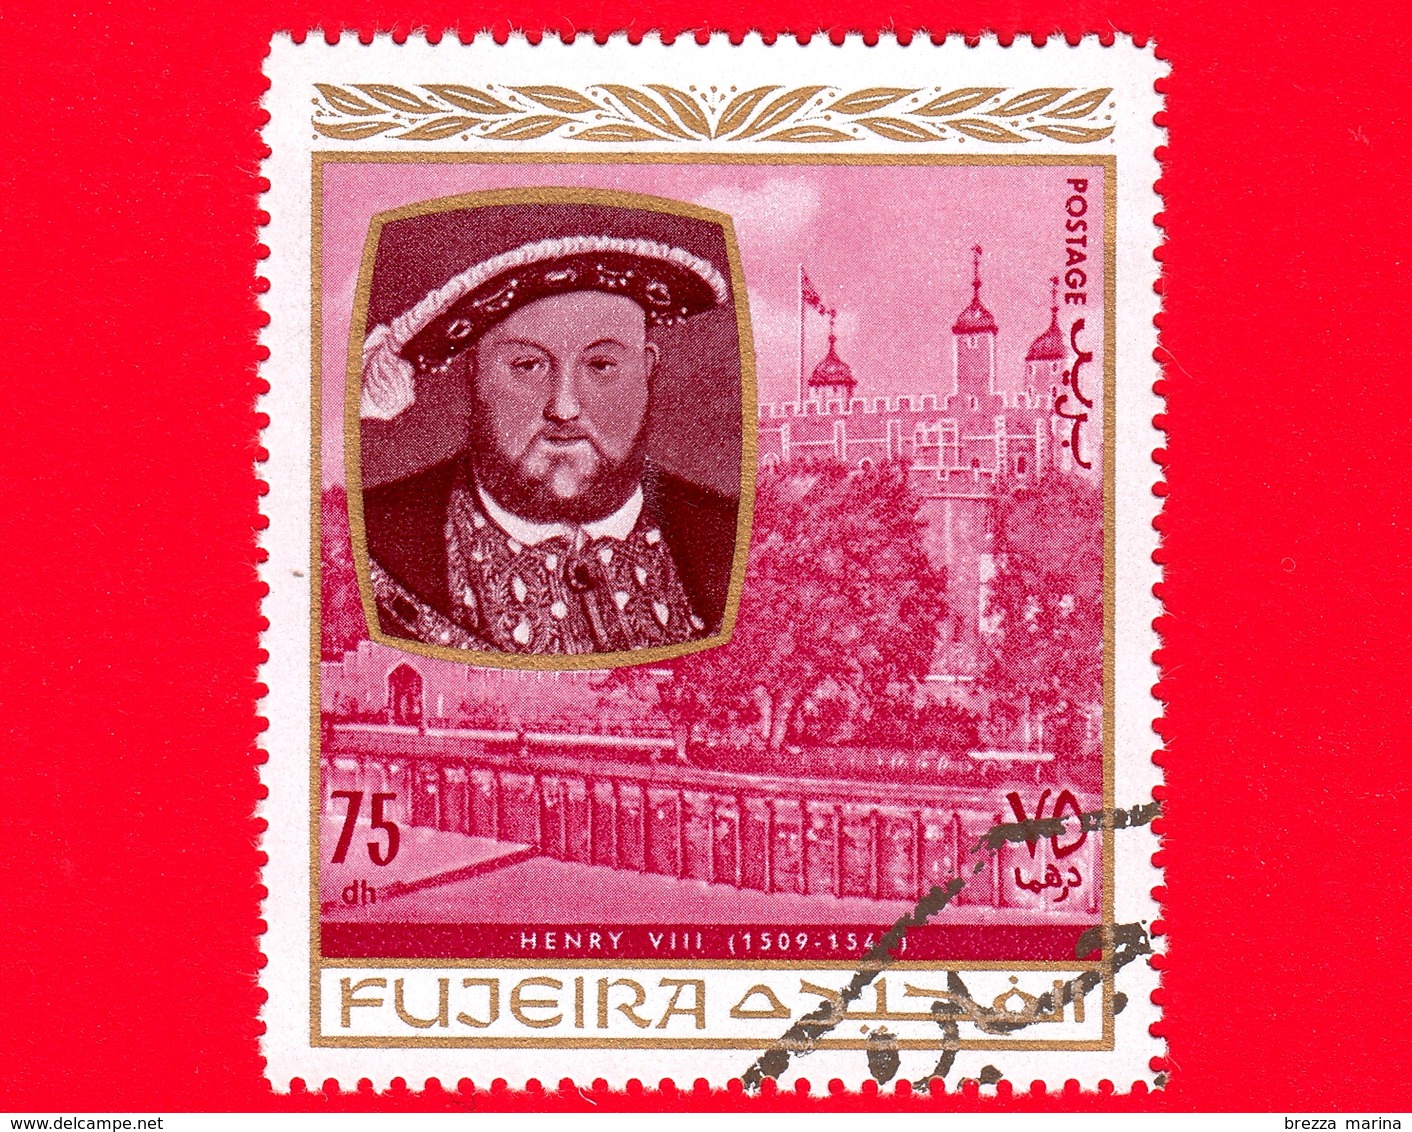 Emirati - FUJEIRA - 1970 - Personalità Della Storia Inglese - Enrico VIII D'Inghilterra (1509-1547) - 75 - Fujeira